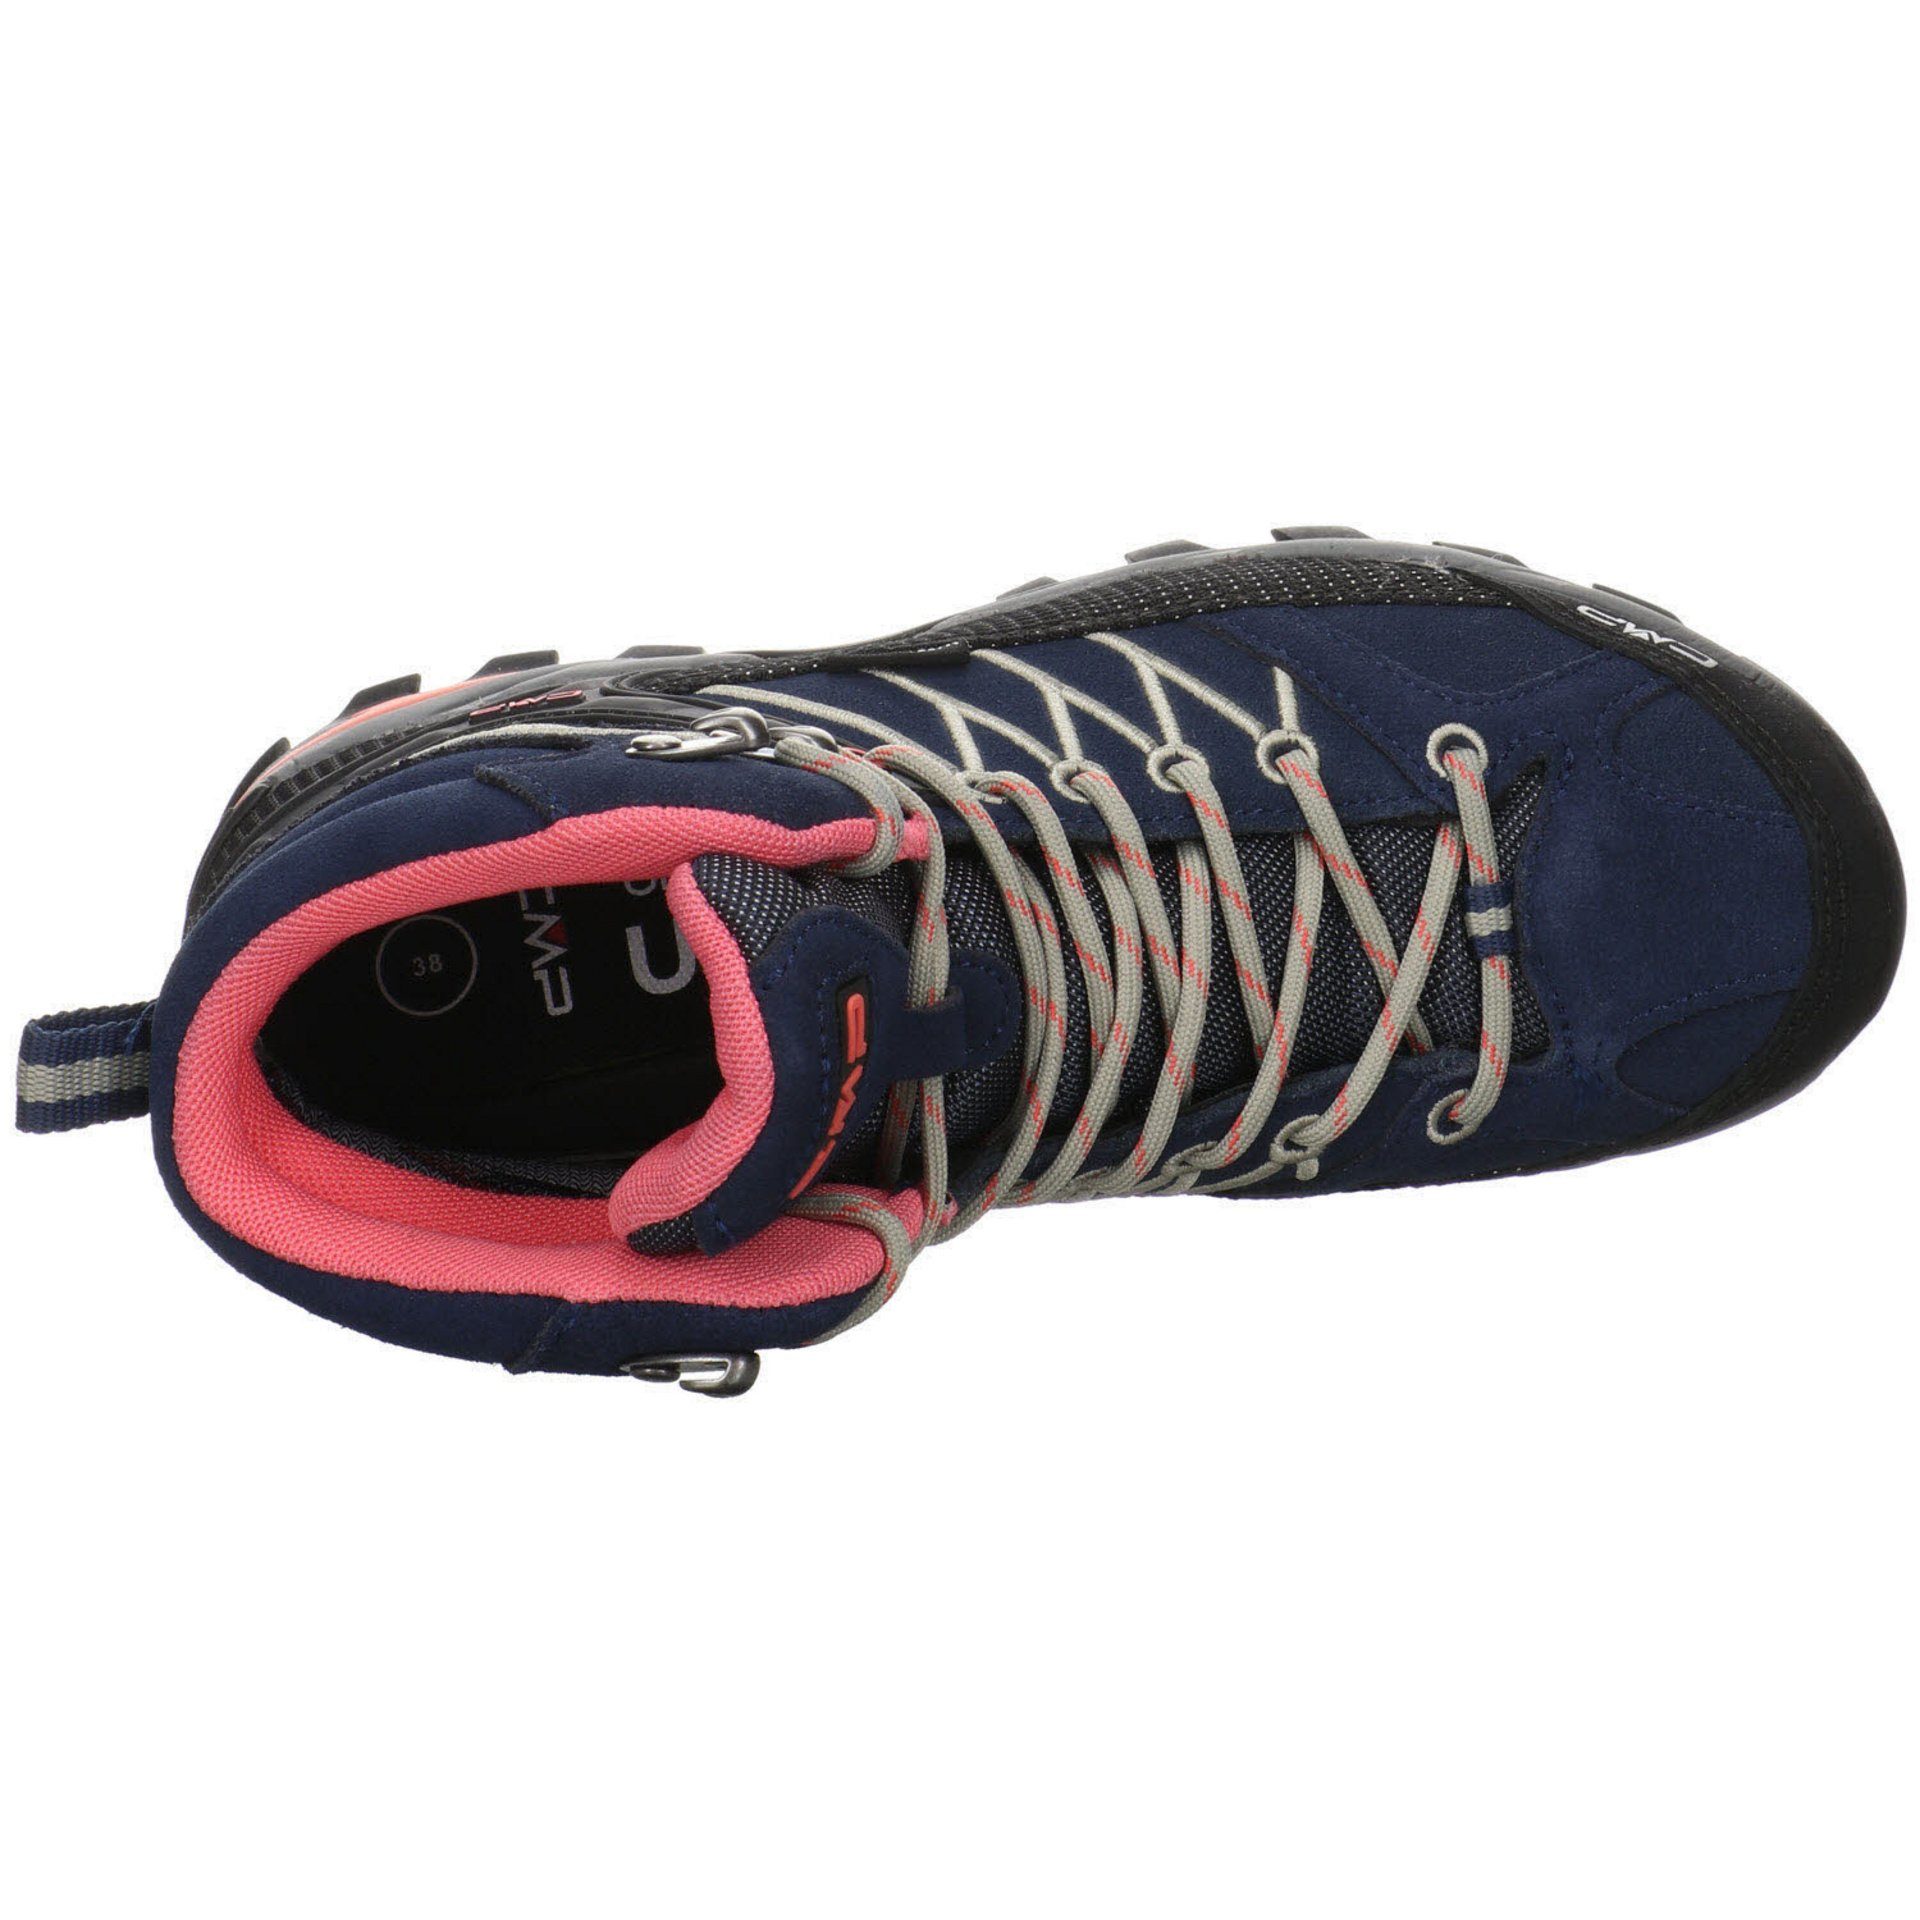 Rigel Damen Outdoorschuh BLUE-CORALLO Leder-/Textilkombination Schuhe Outdoorschuh Outdoor Mid CMP